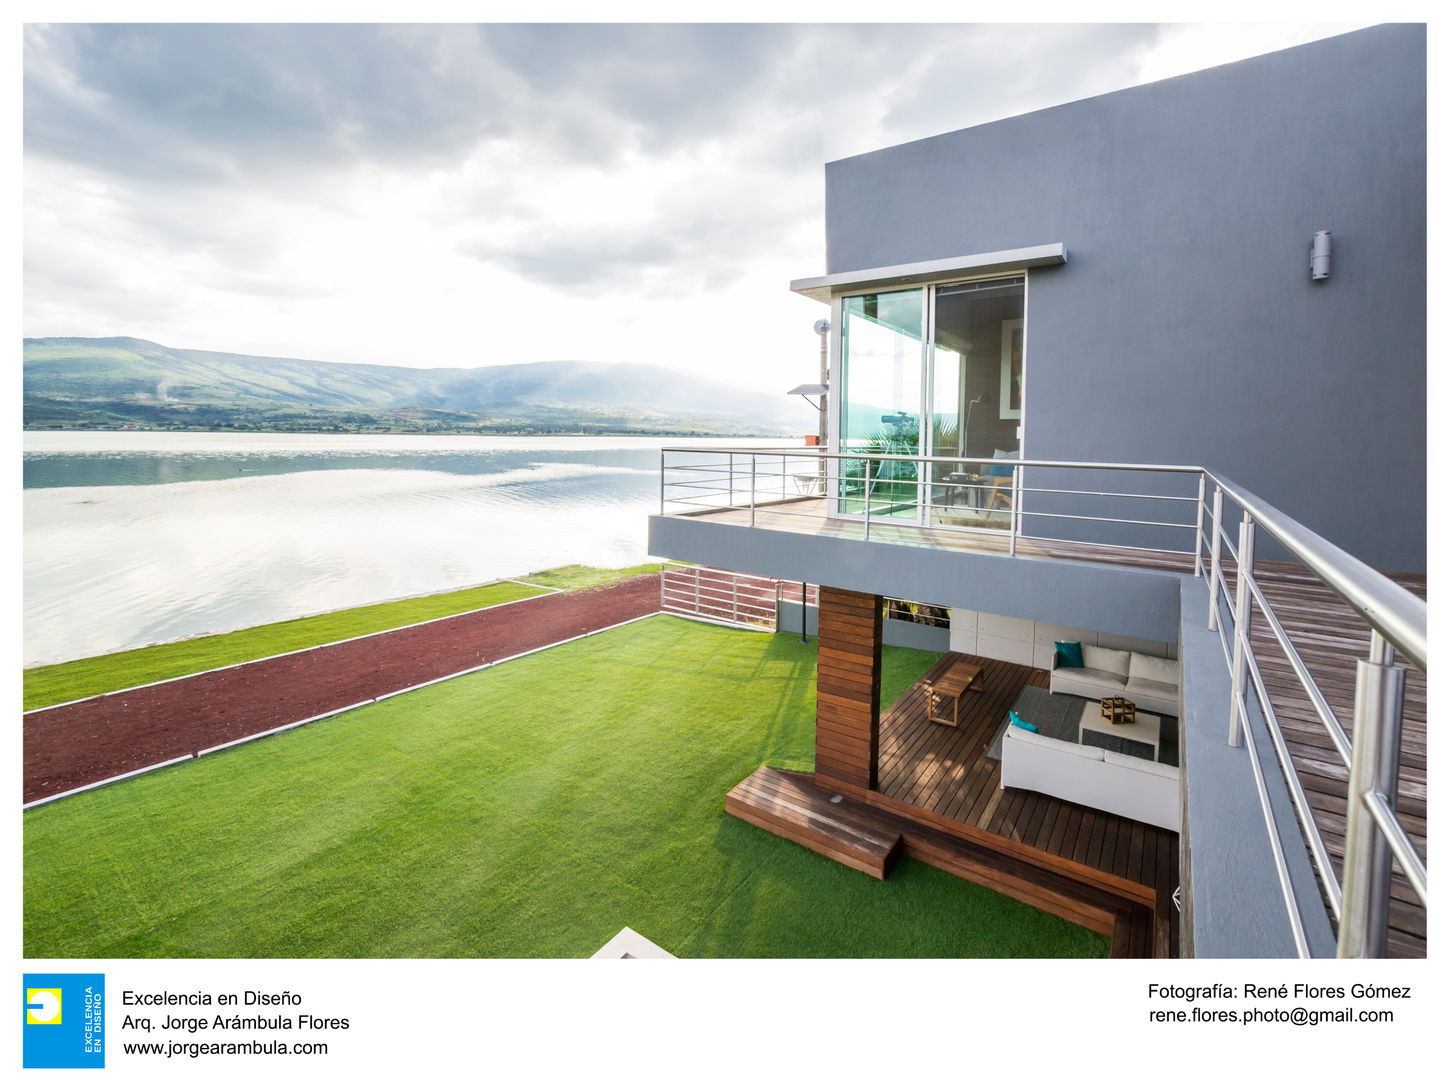 Casa Vista Lago, Excelencia en Diseño Excelencia en Diseño Jardines modernos: Ideas, imágenes y decoración